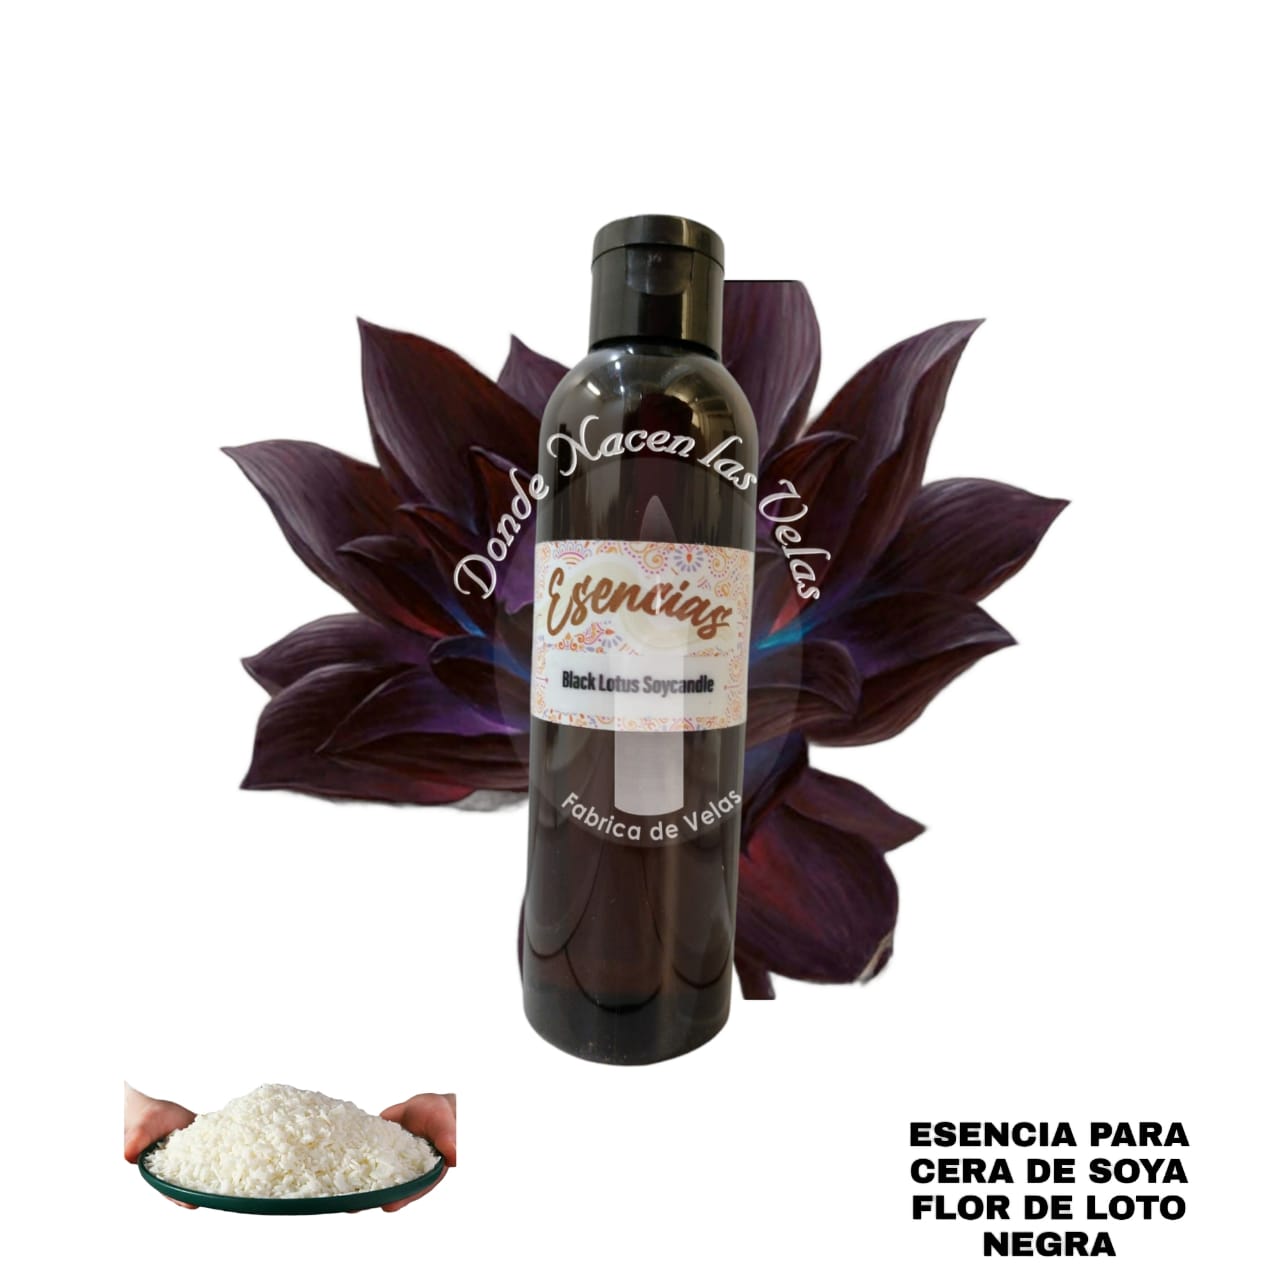 Esencia Flor de Loto Negra, Para Cera de Soya. 95 ml